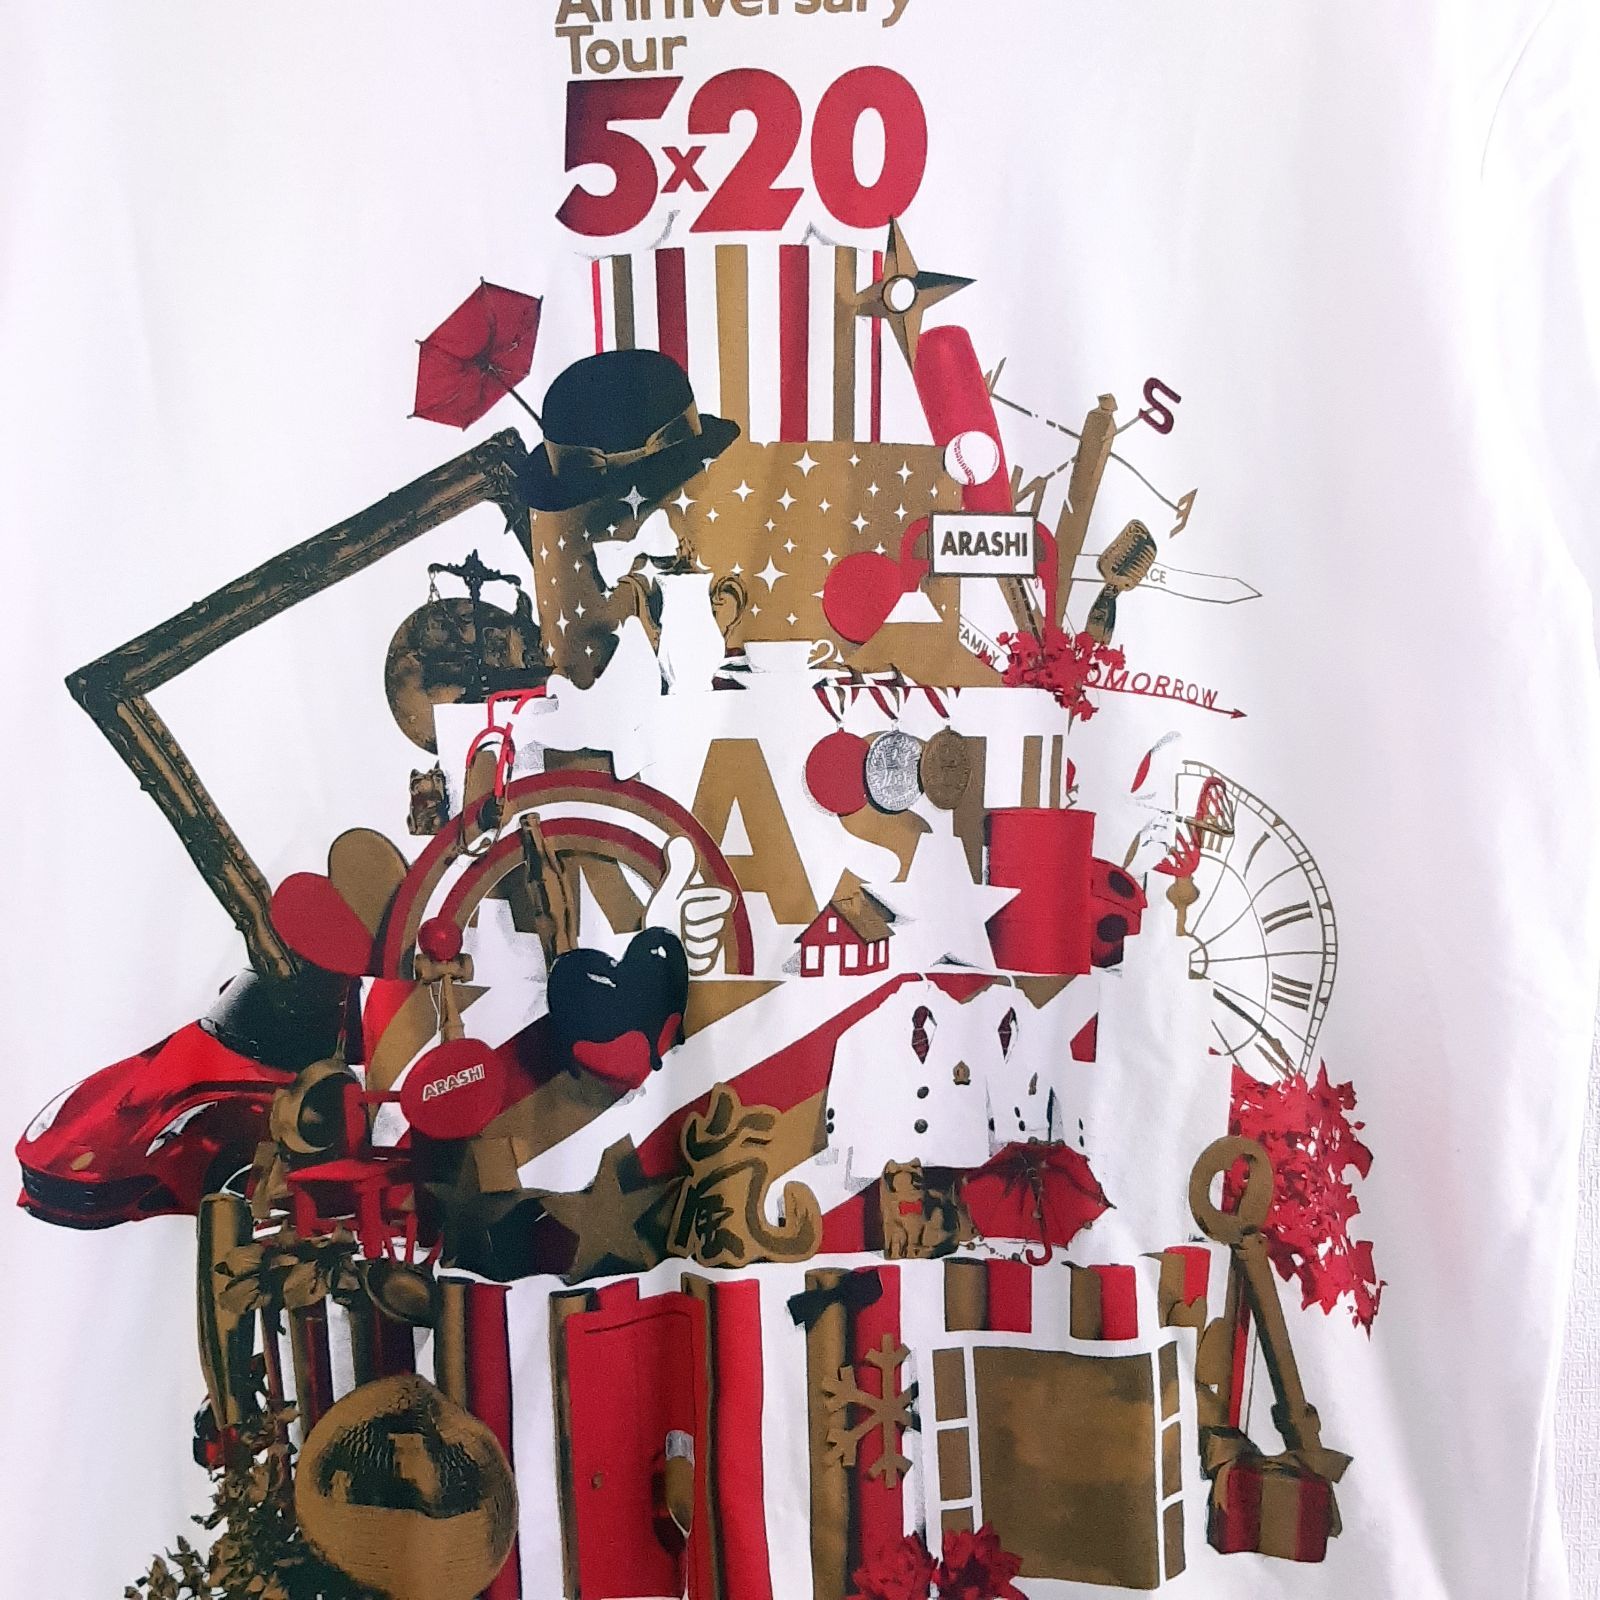 嵐ARASHI 5×20 anniversary tourツアー Tシャツ - メルカリ